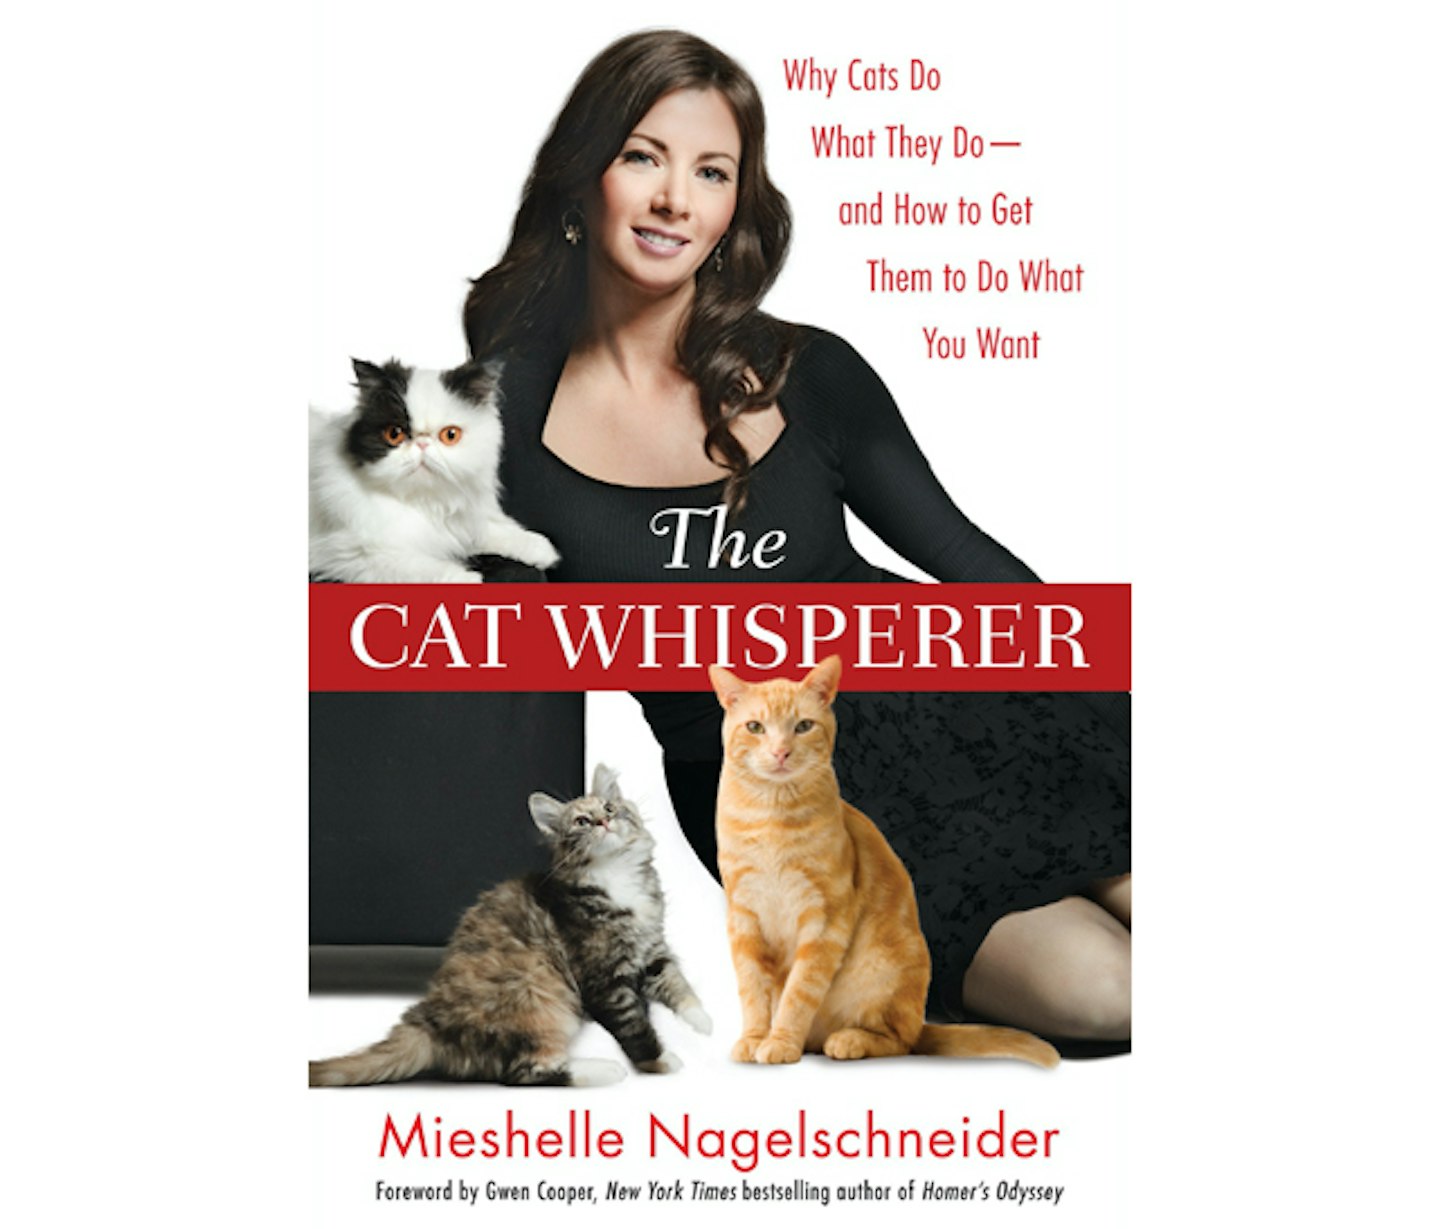 cat whisperer book